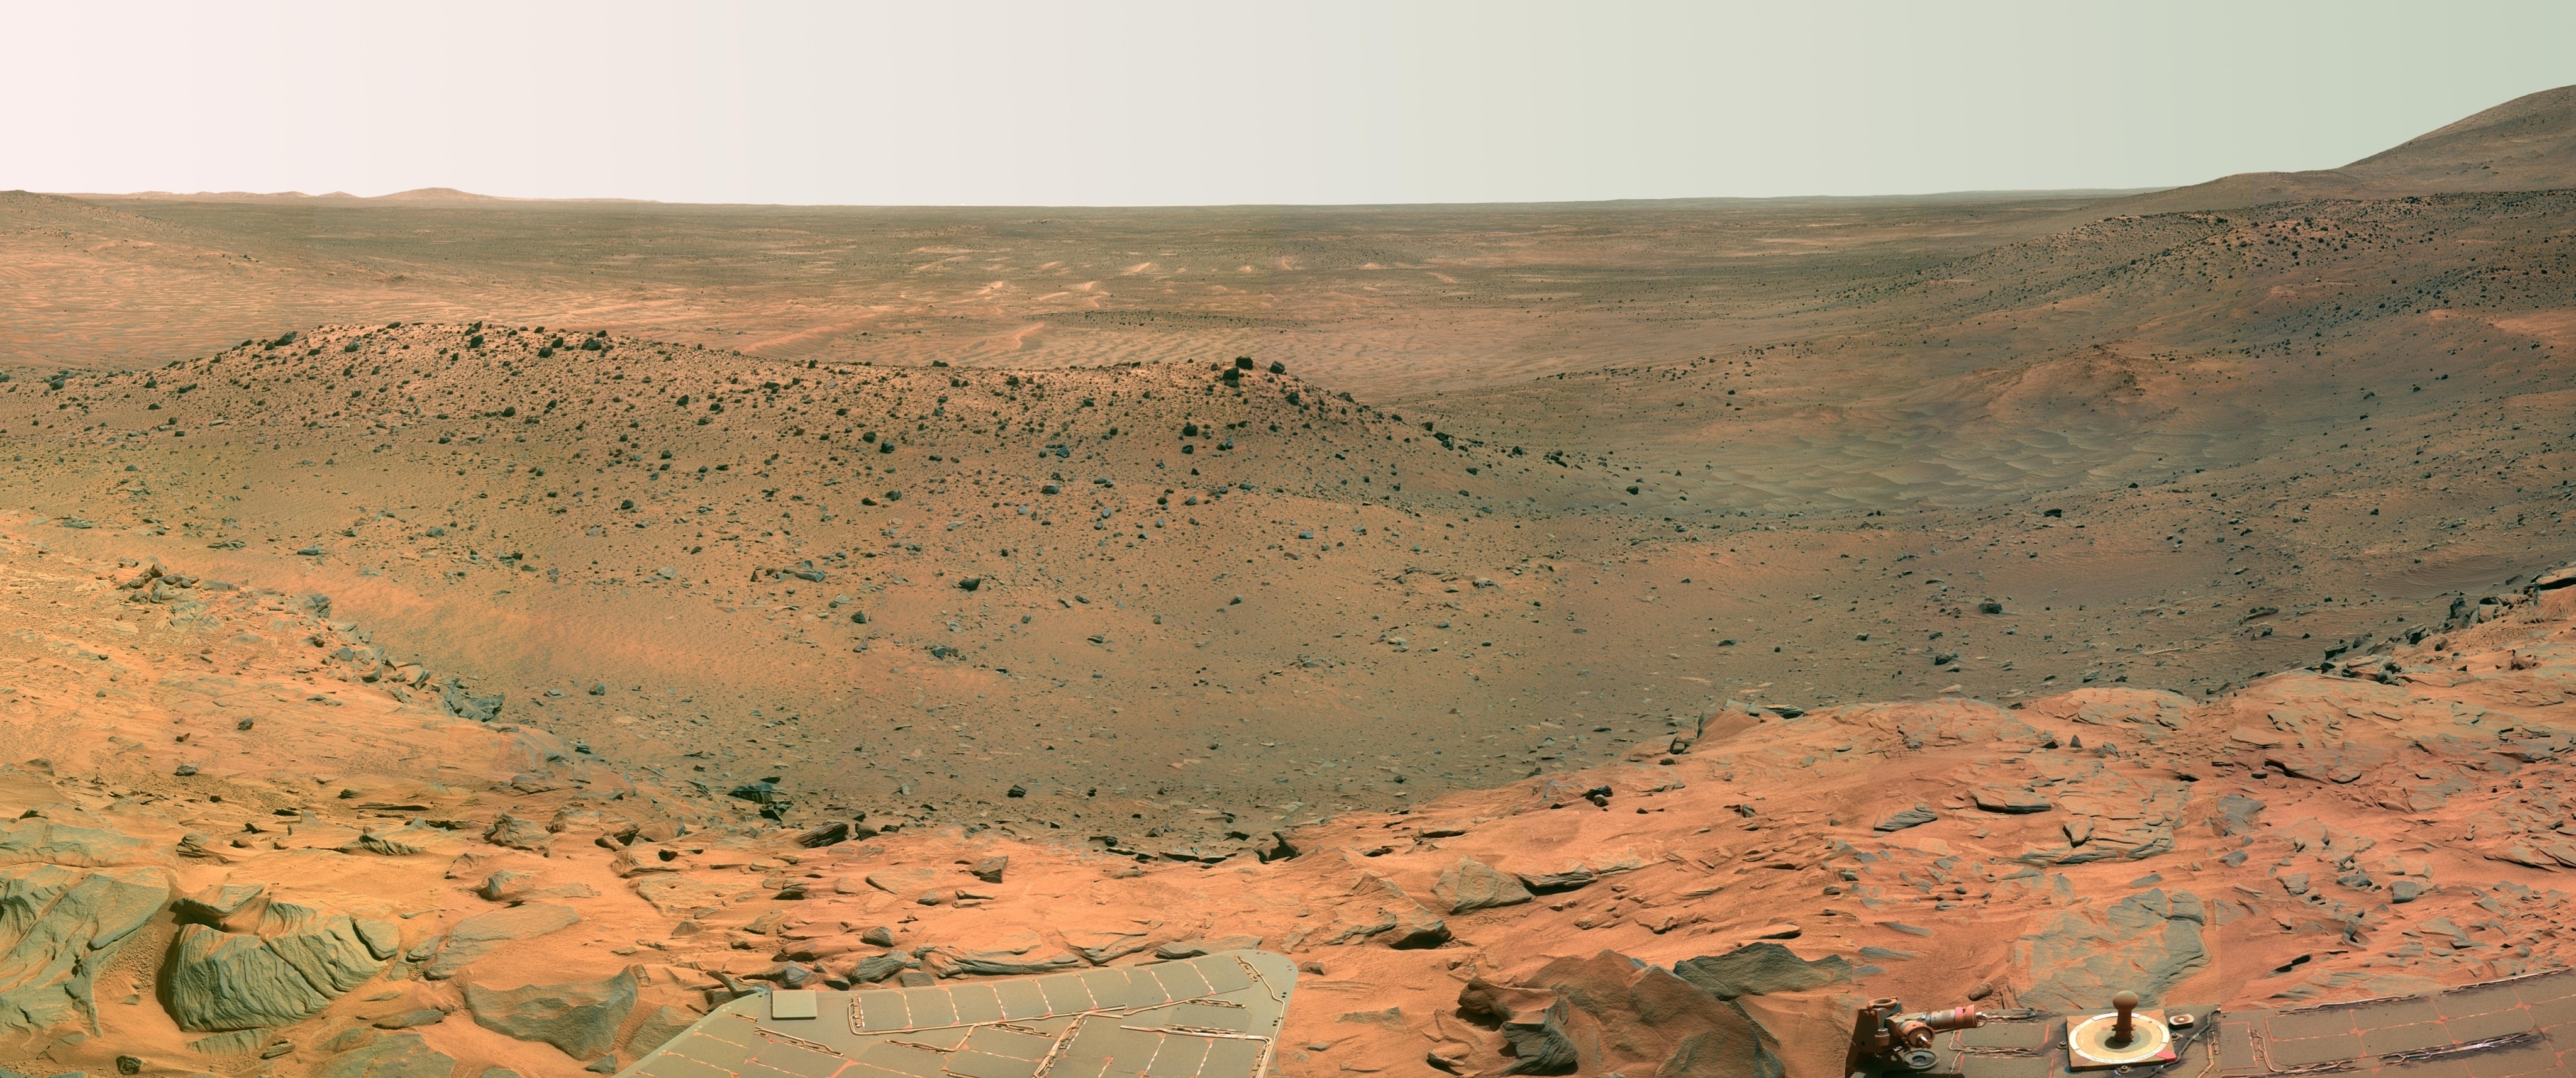 Mars Rocks Dune Nasa Rover Wallpaper